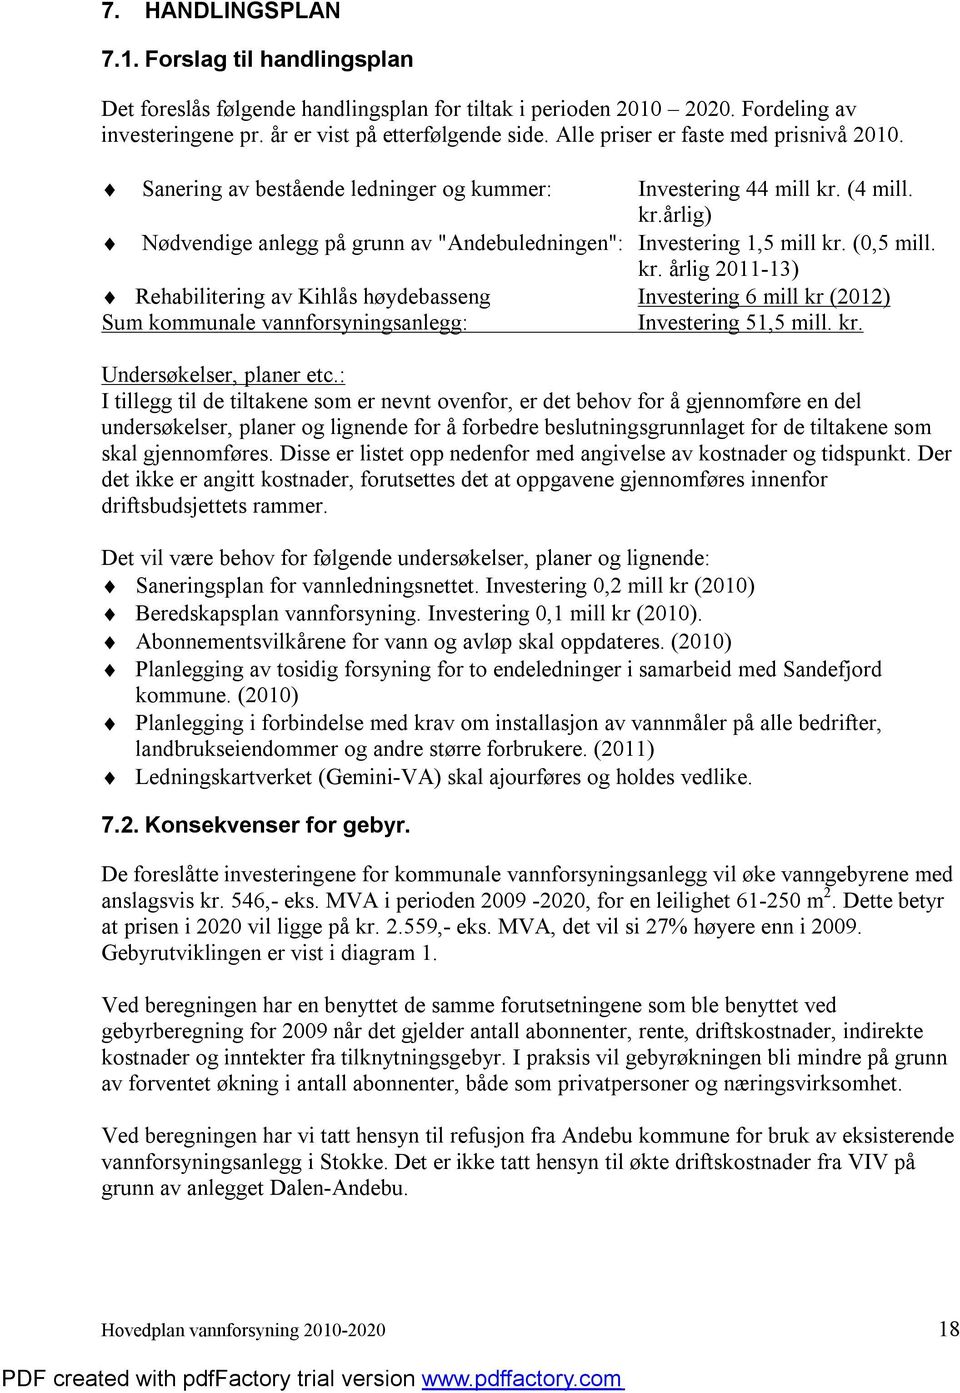 (0,5 mill. kr. årlig 2011-13) Rehabilitering av Kihlås høydebasseng Investering 6 mill kr (2012) Sum kommunale vannforsyningsanlegg: Investering 51,5 mill. kr. Undersøkelser, planer etc.